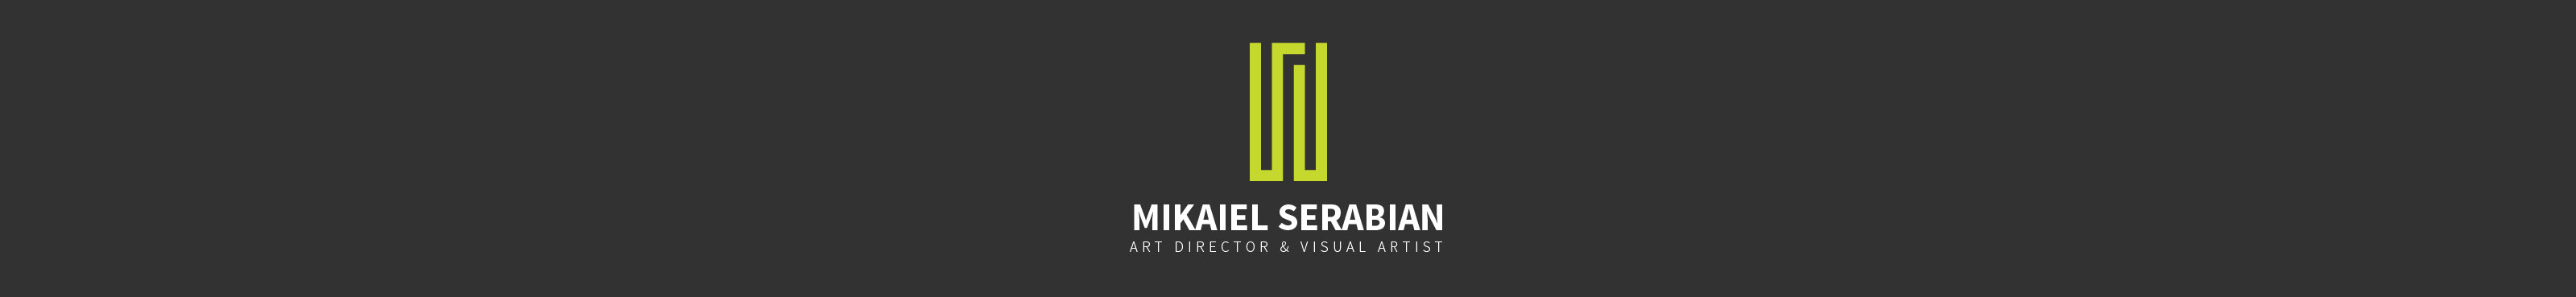 Mikaiel Serabian 的個人檔案橫幅